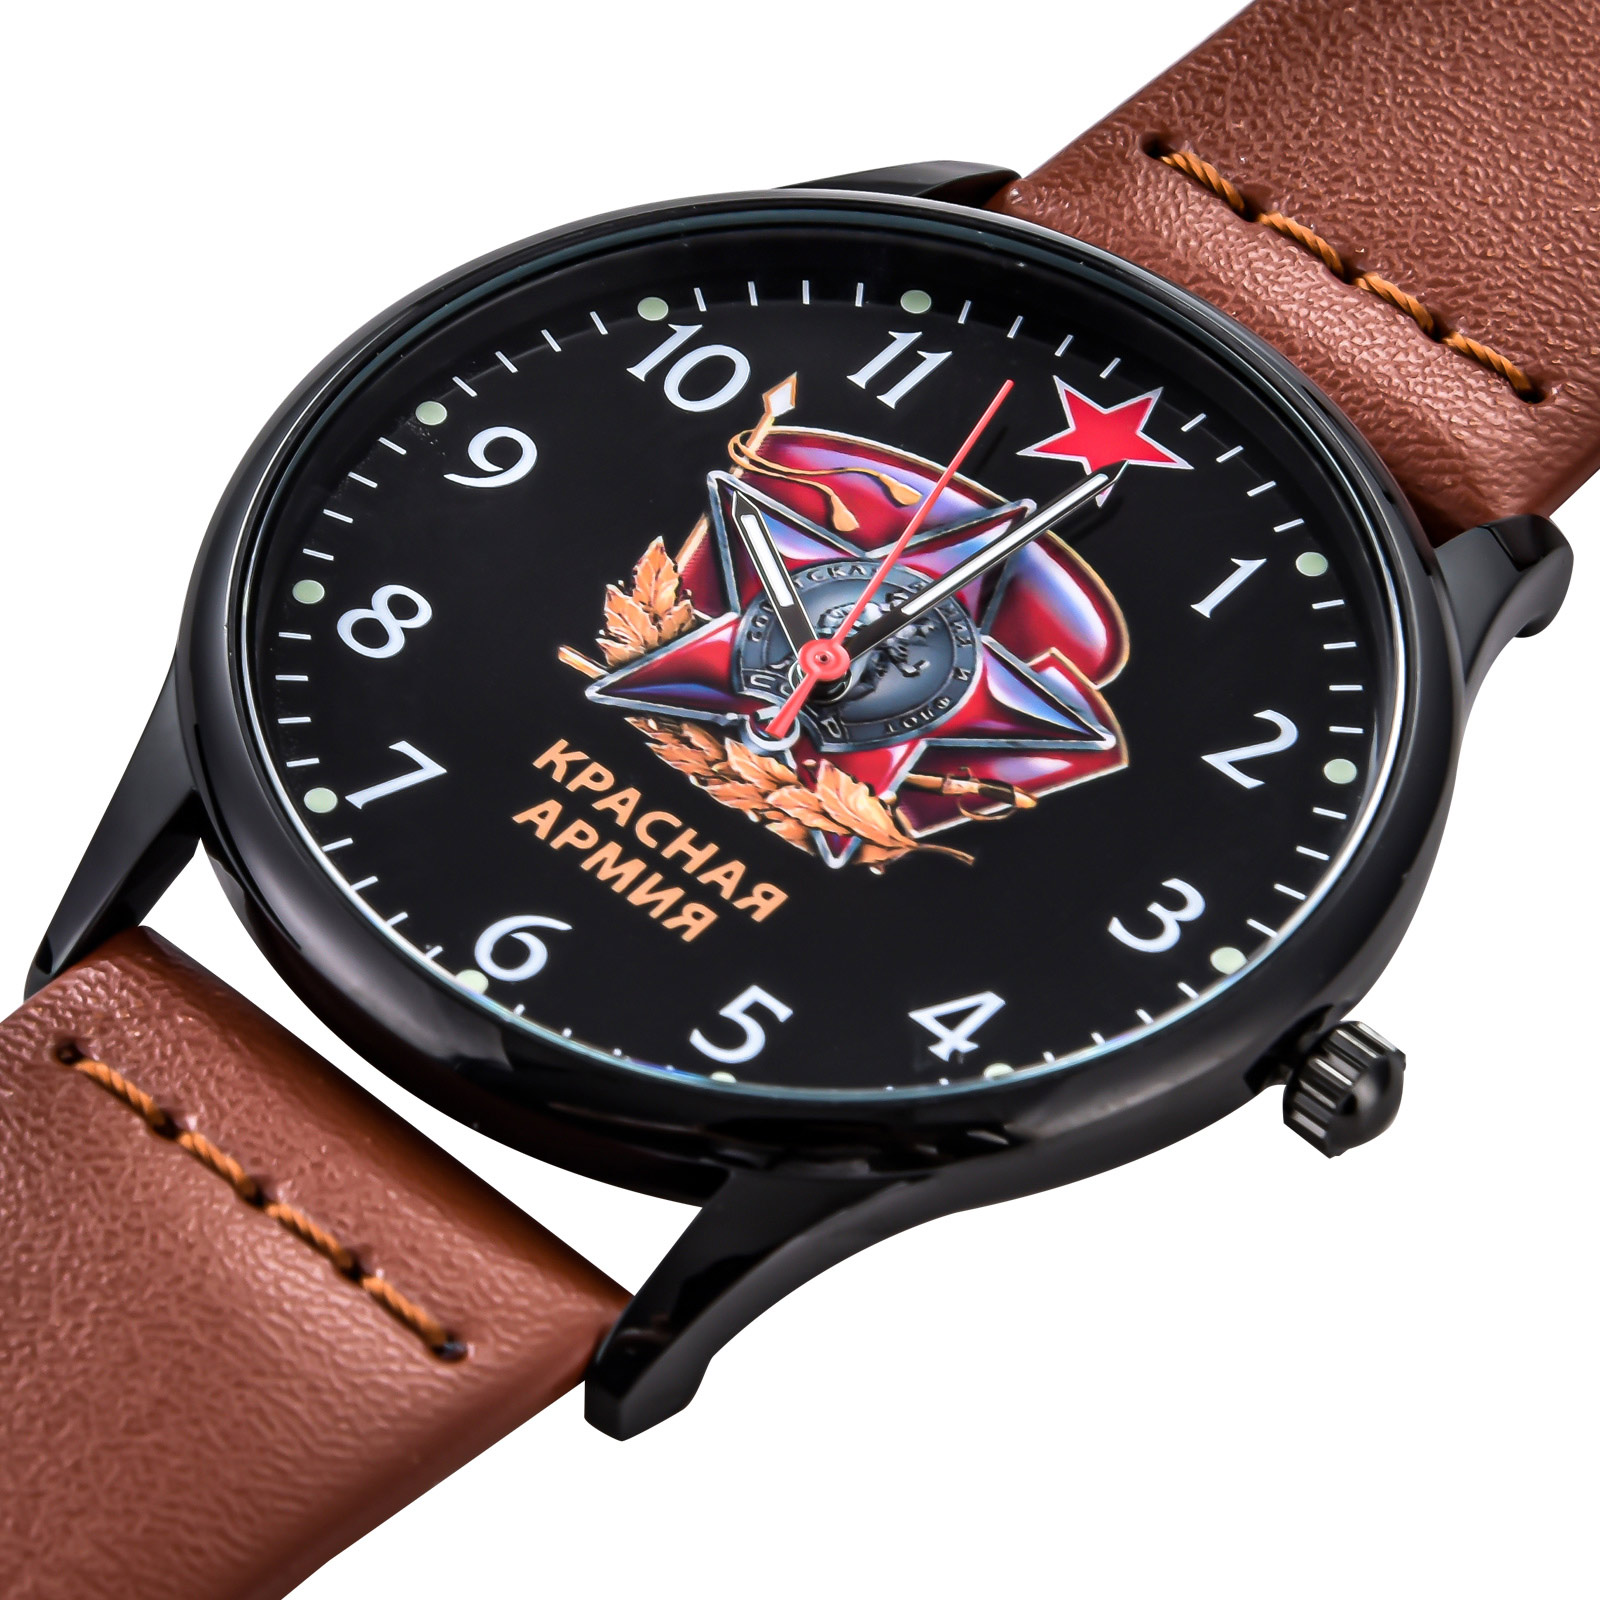 Командирские кварцевые часы "Красная Армия" 